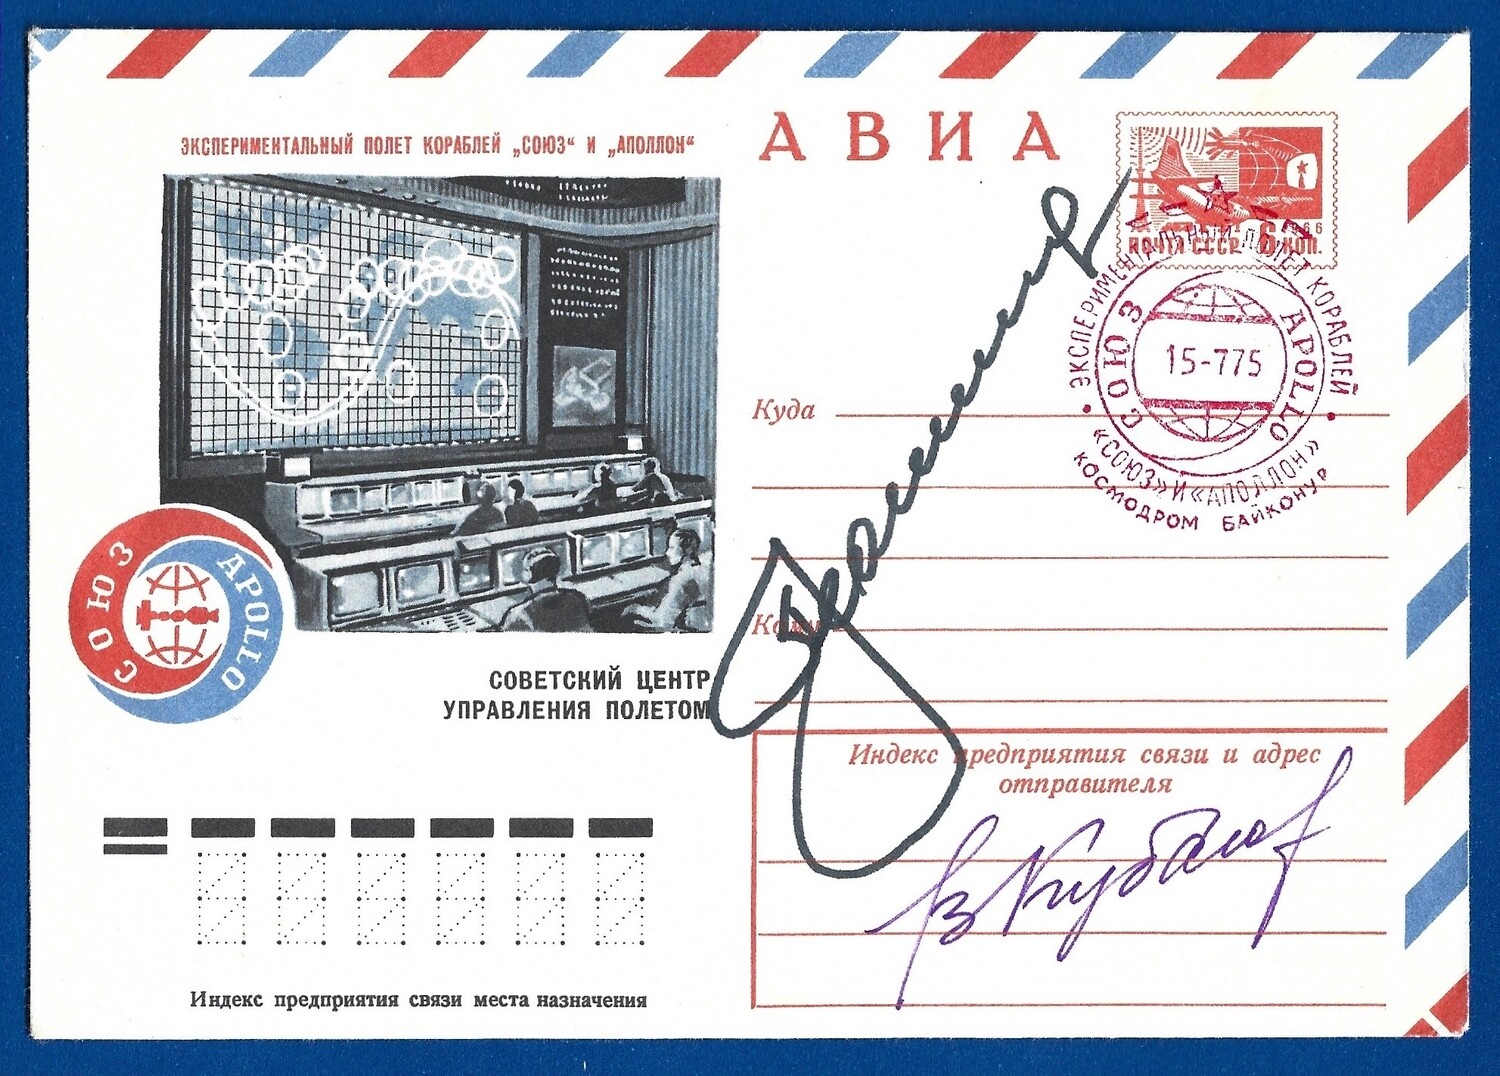 Apollo-Soyuz Soviet crew signed envelope